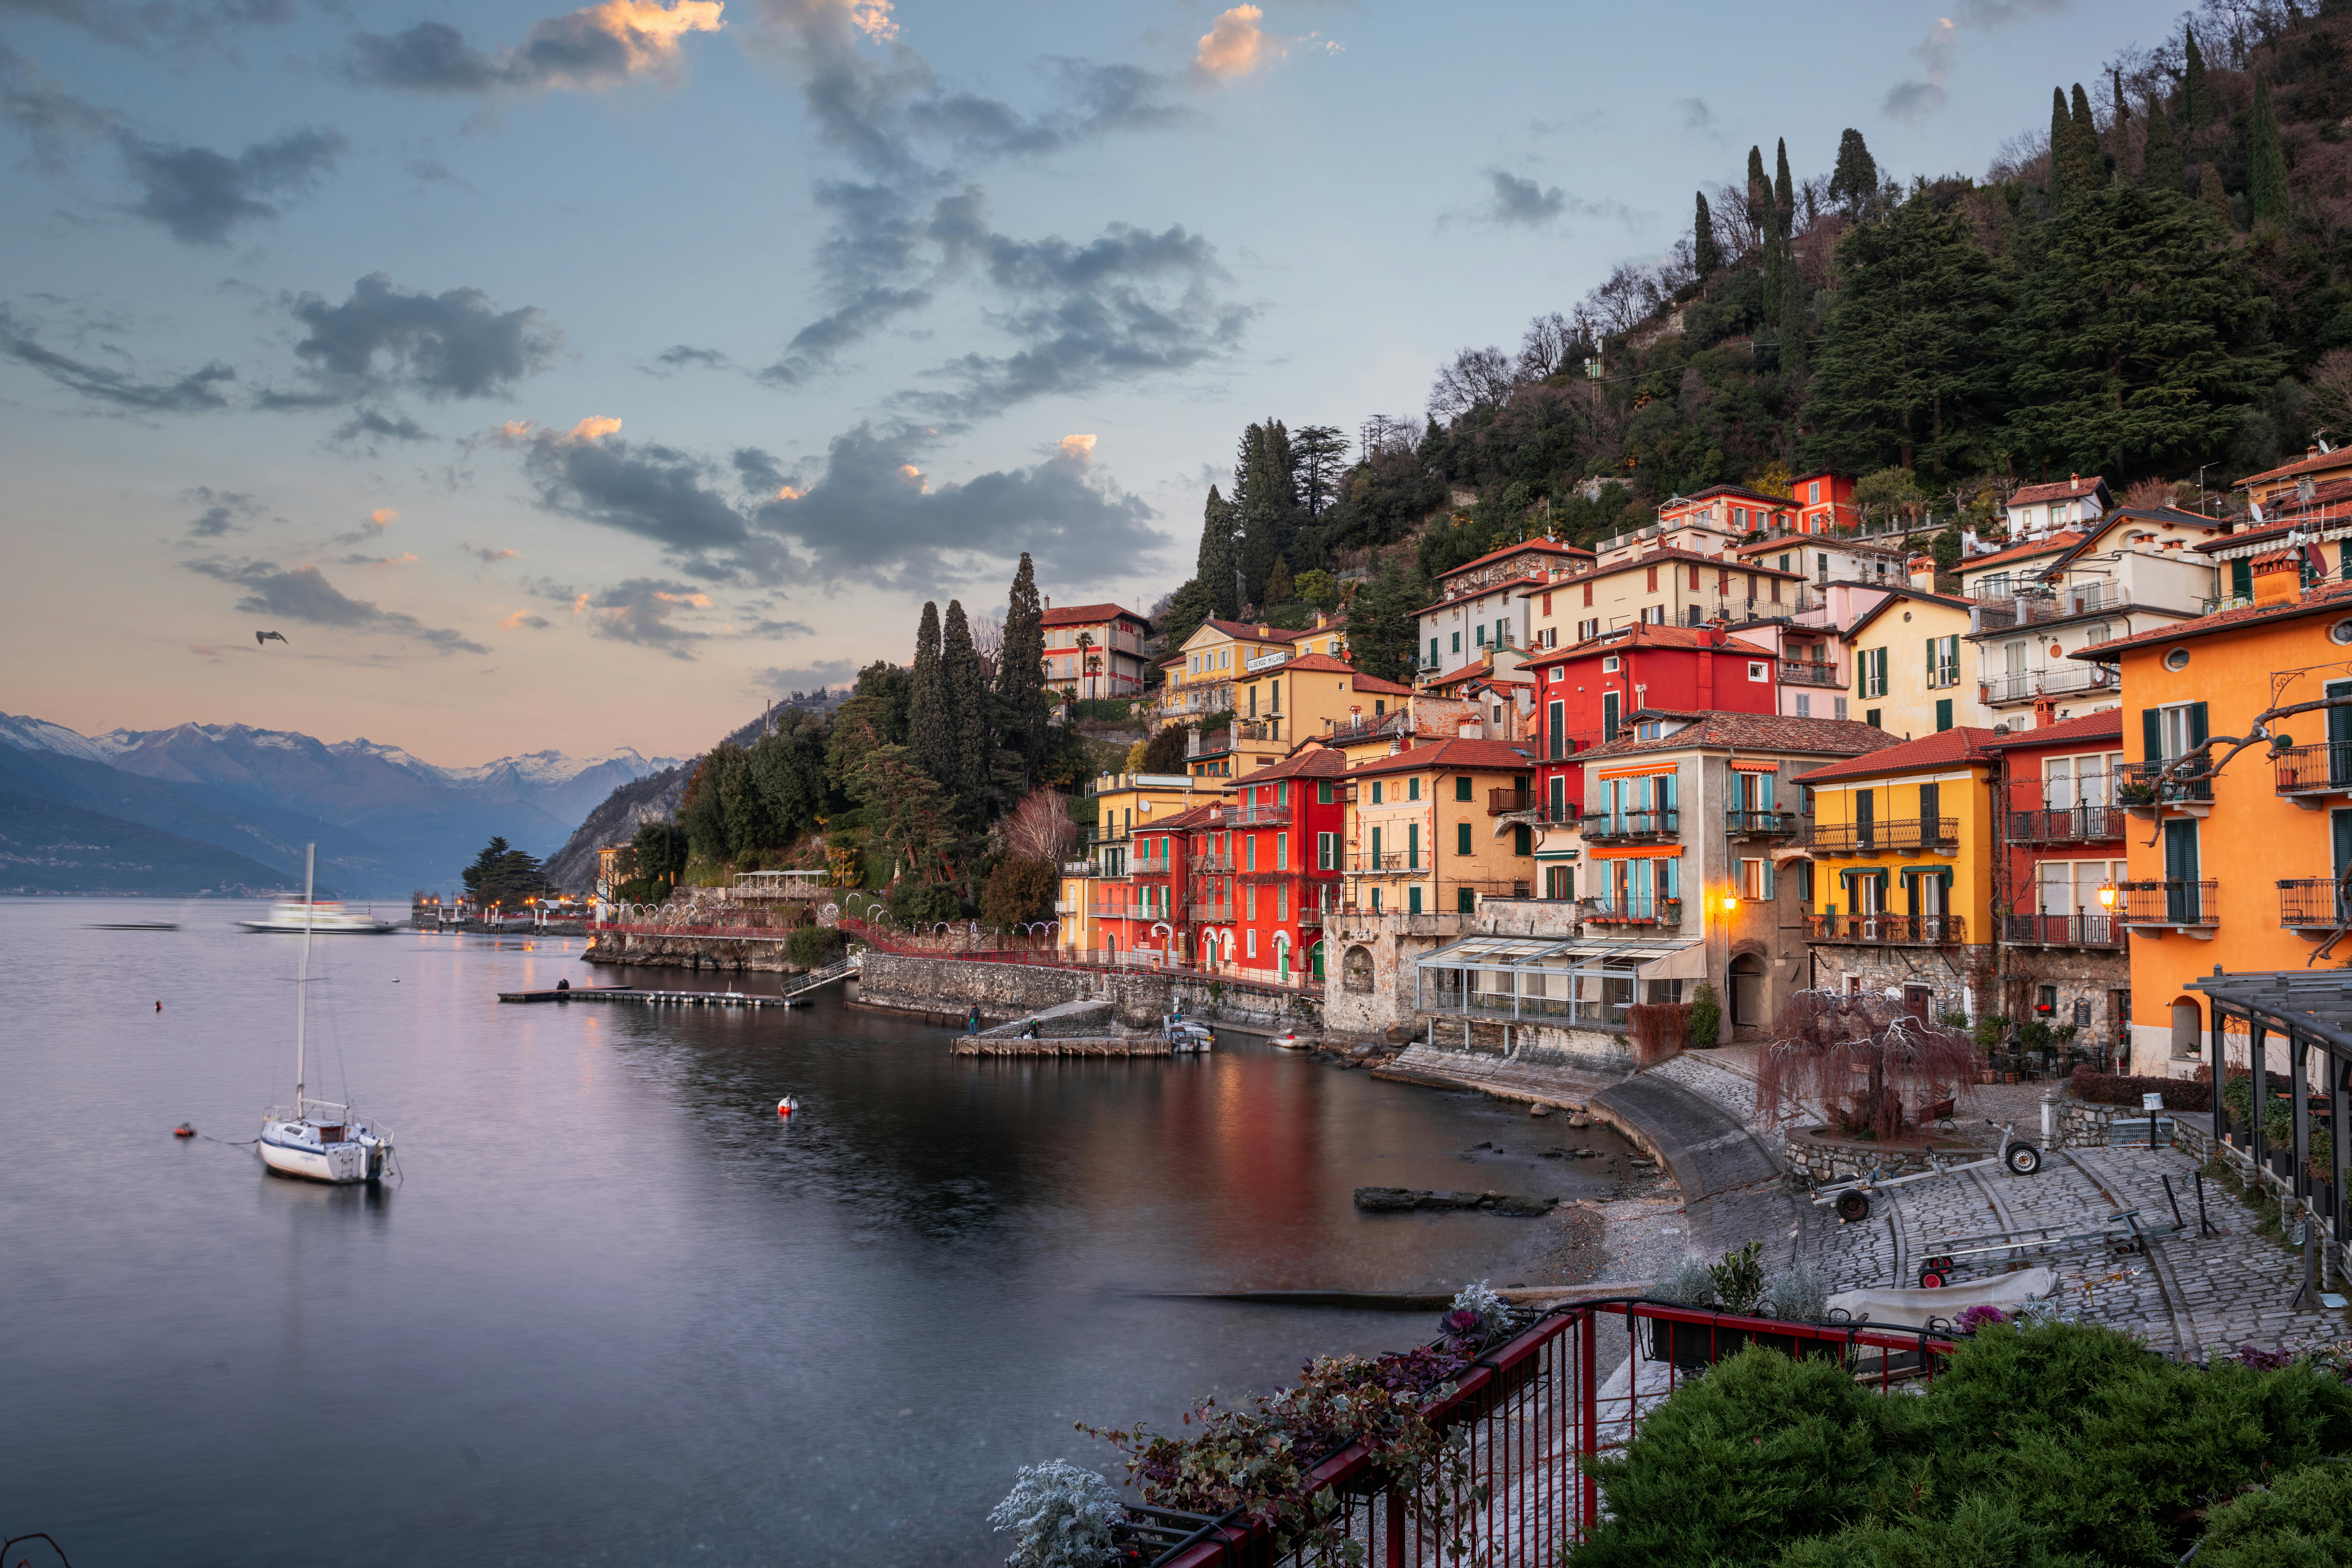 View of Varenna on Lake Como